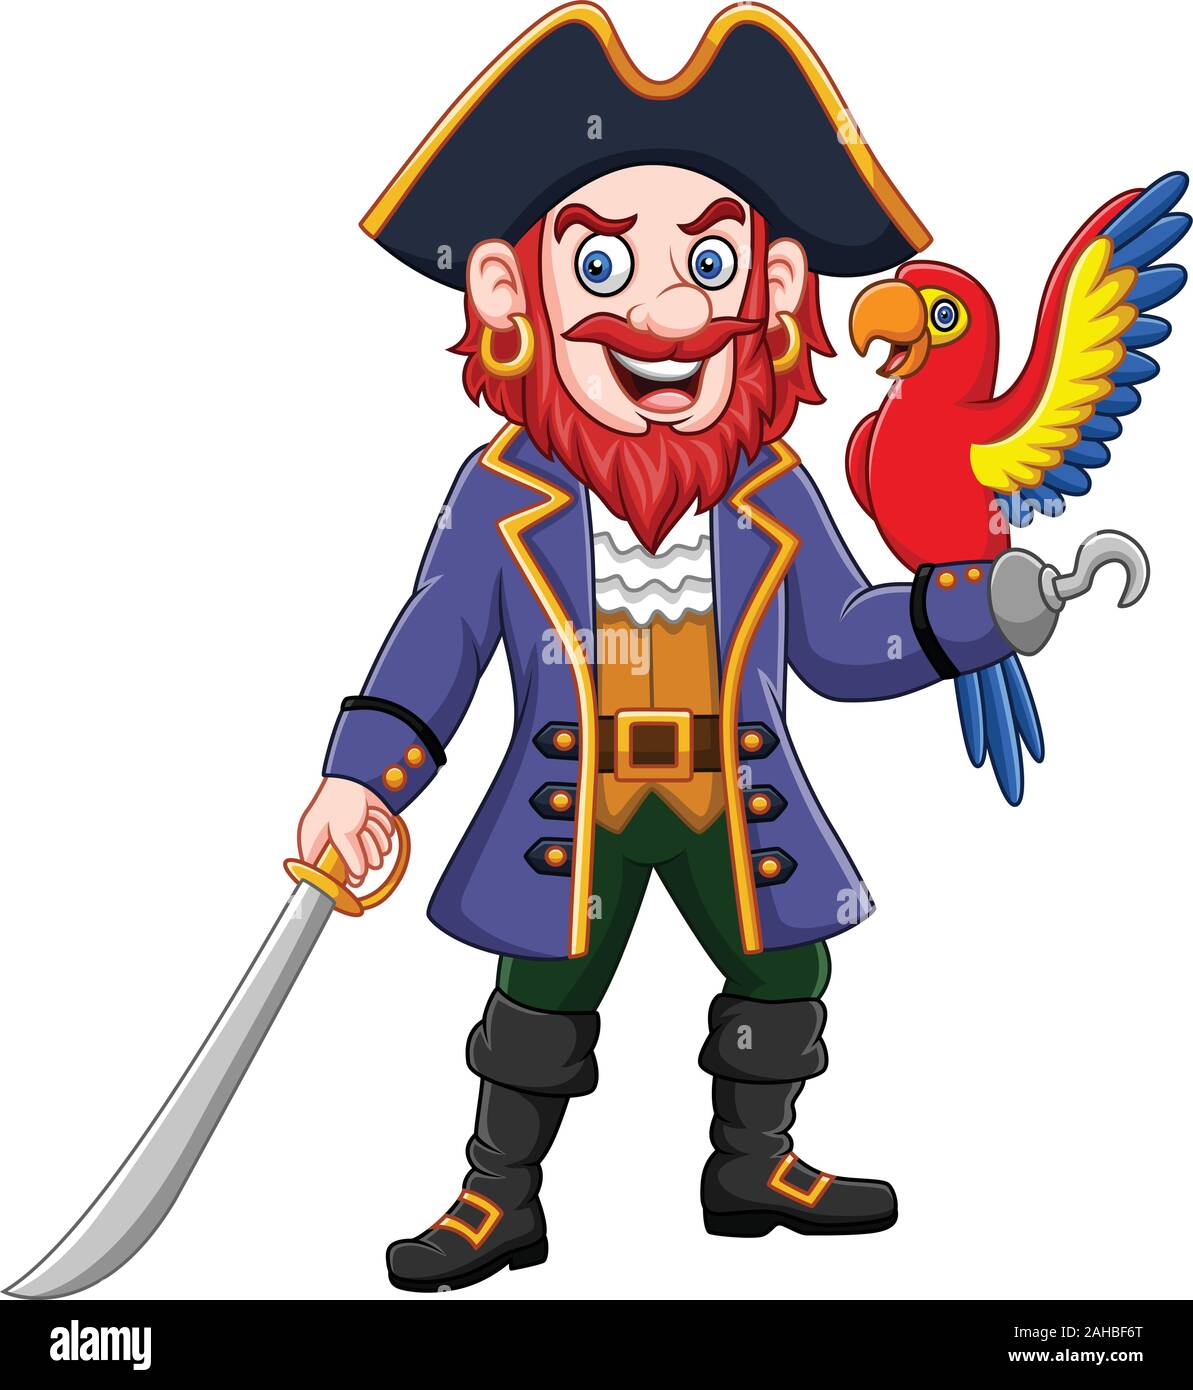 Cartoon pirate captain and macaw bird Stock Vector